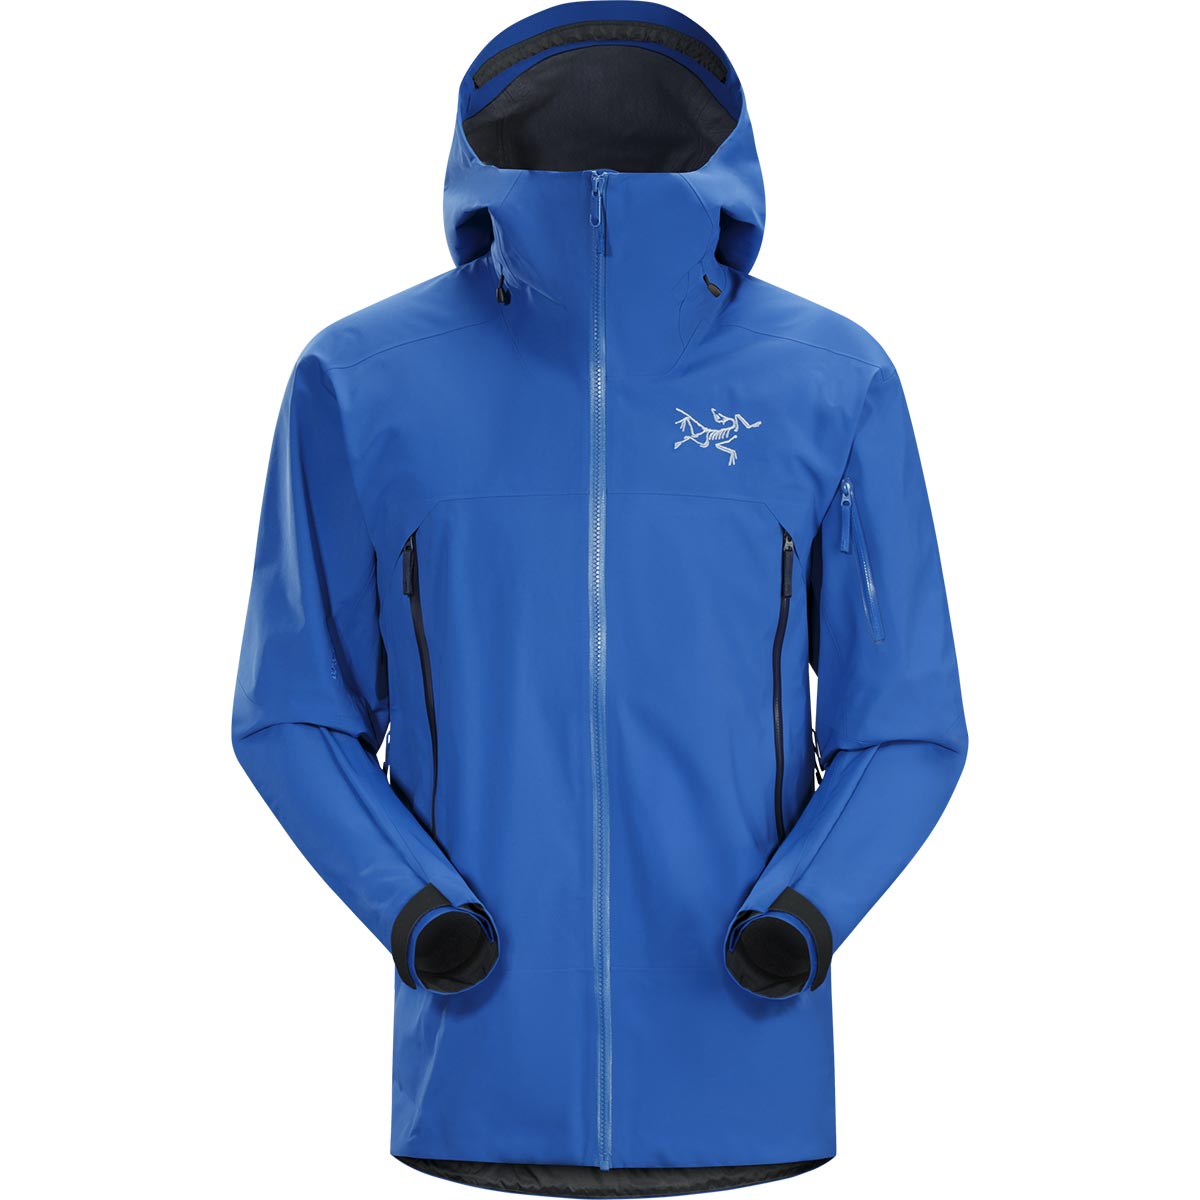 Arc'teryx Sabre Jacket, men's, Fall 2018 colors of discontinued model ...